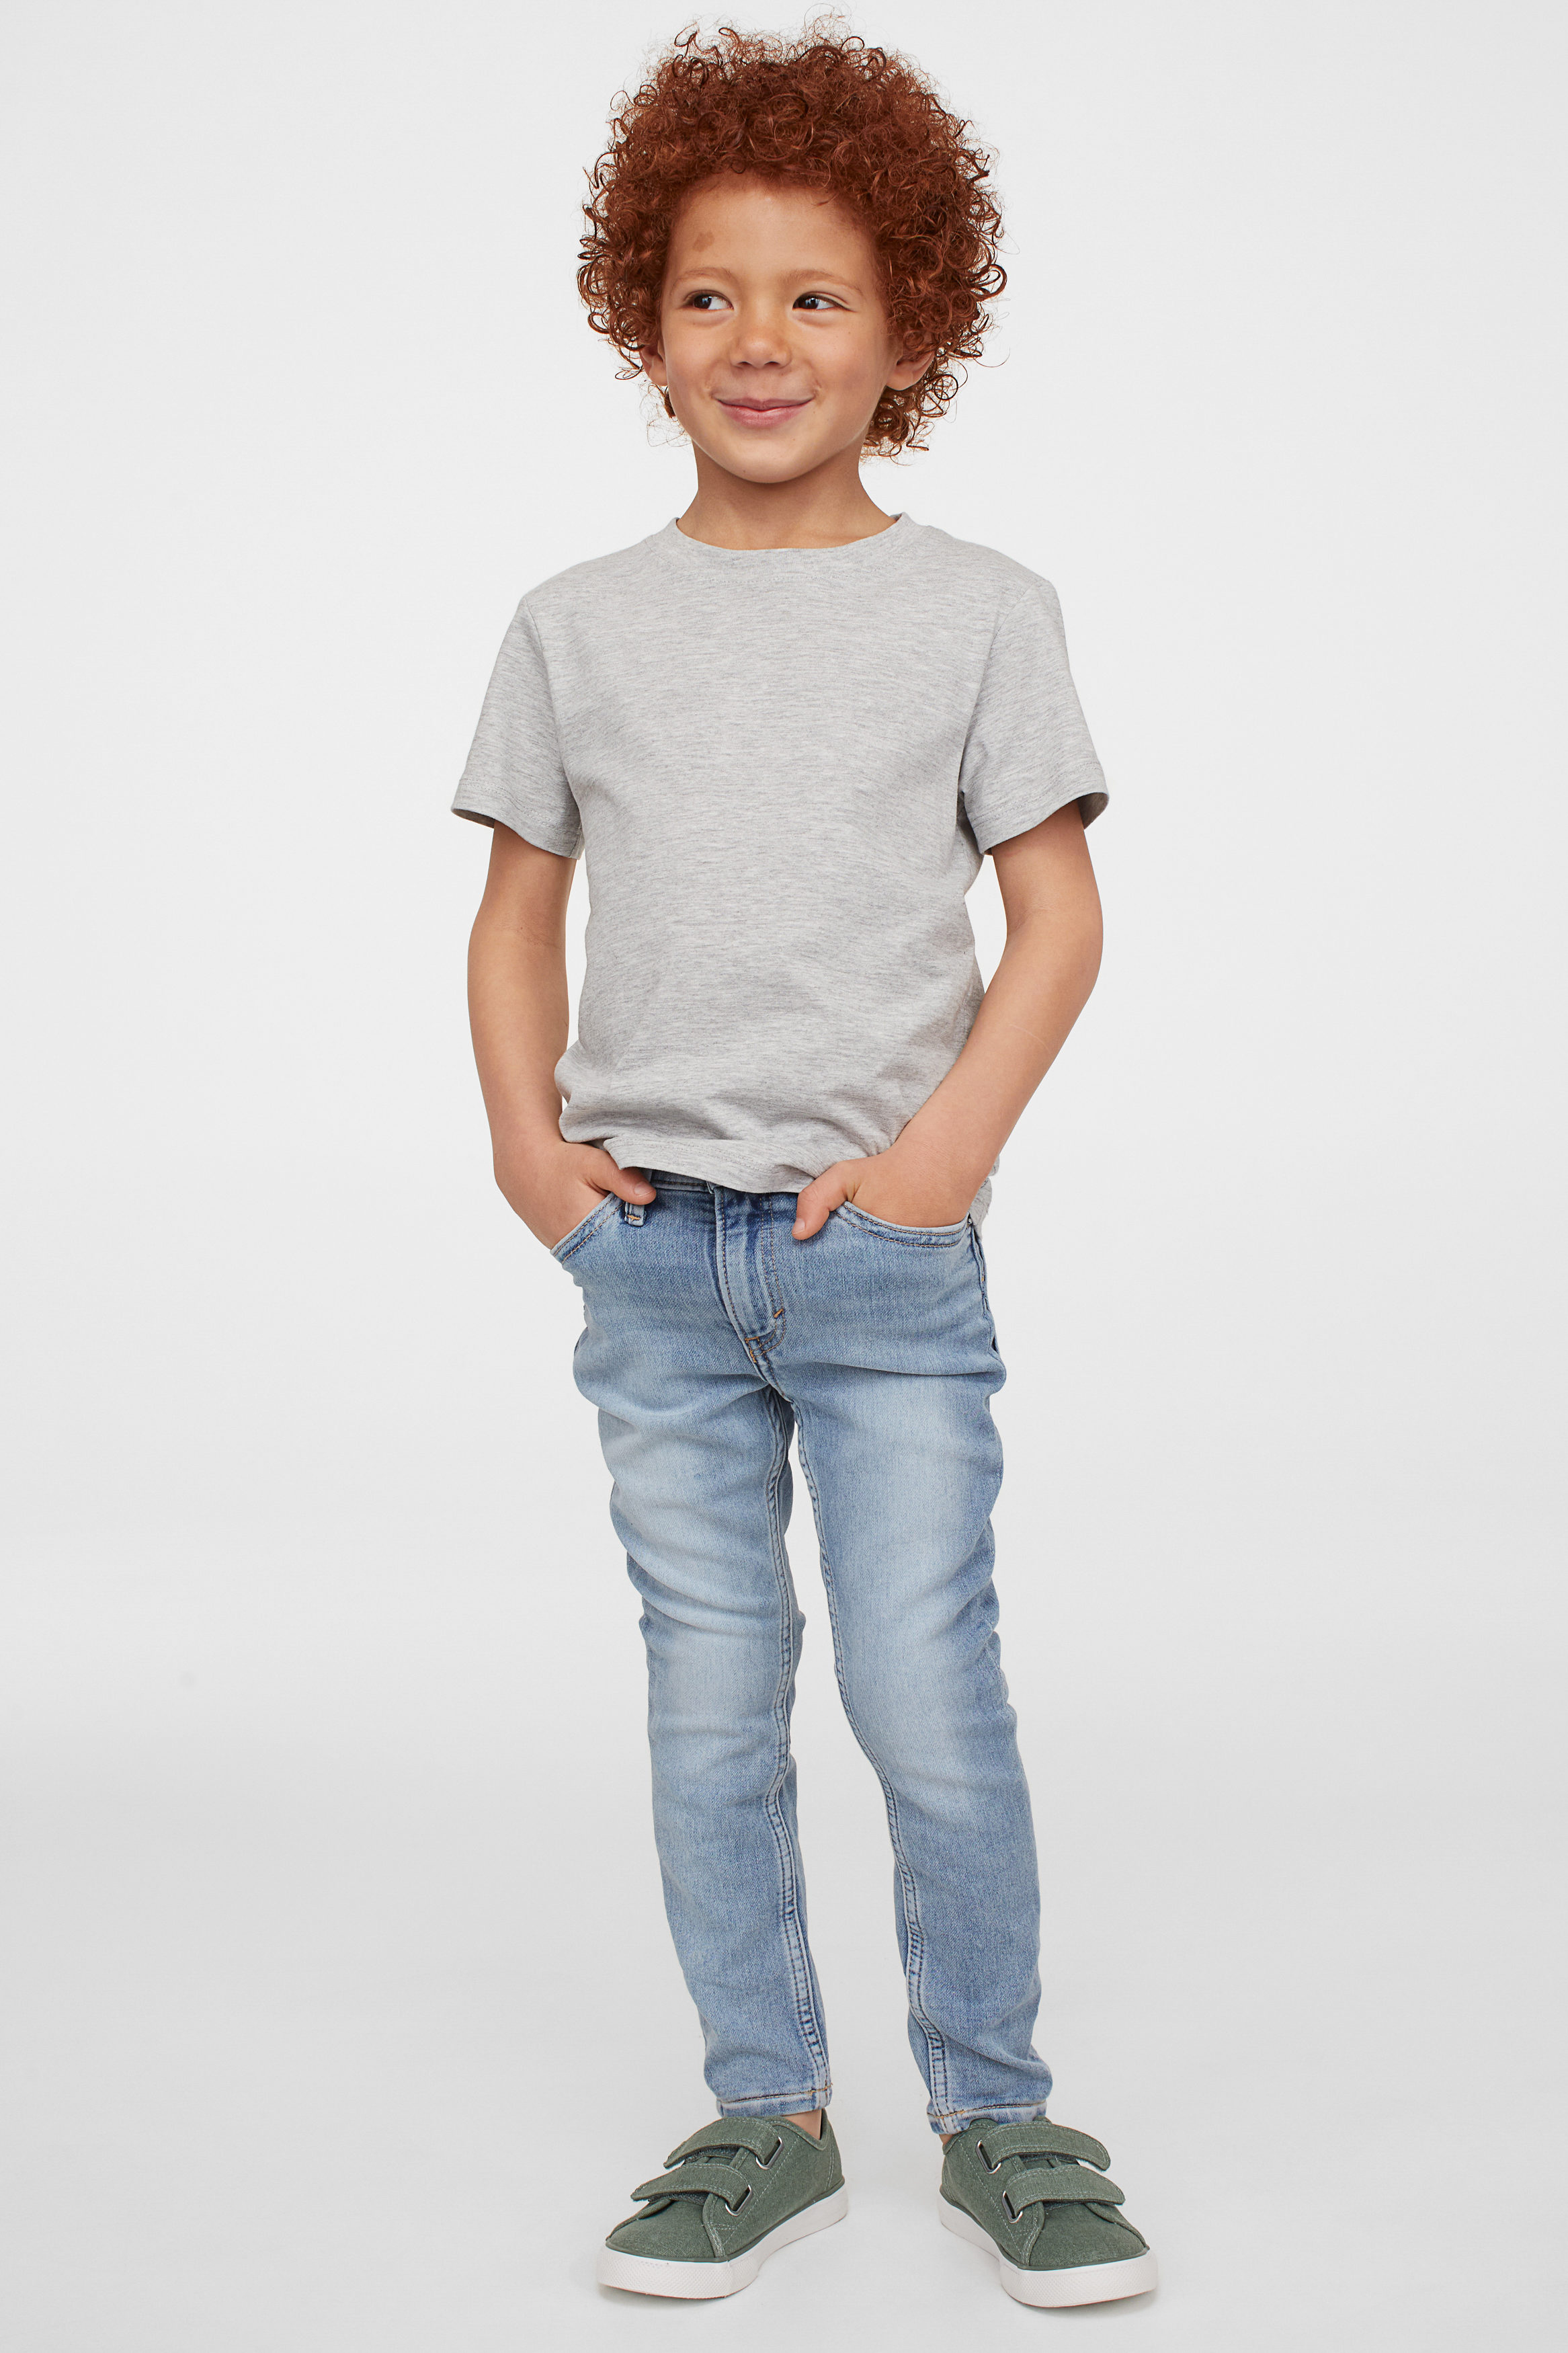 Baby Jungen Kleidung Jeans & Hoodie Bundle 3-6 Monate-Wähle Artikel